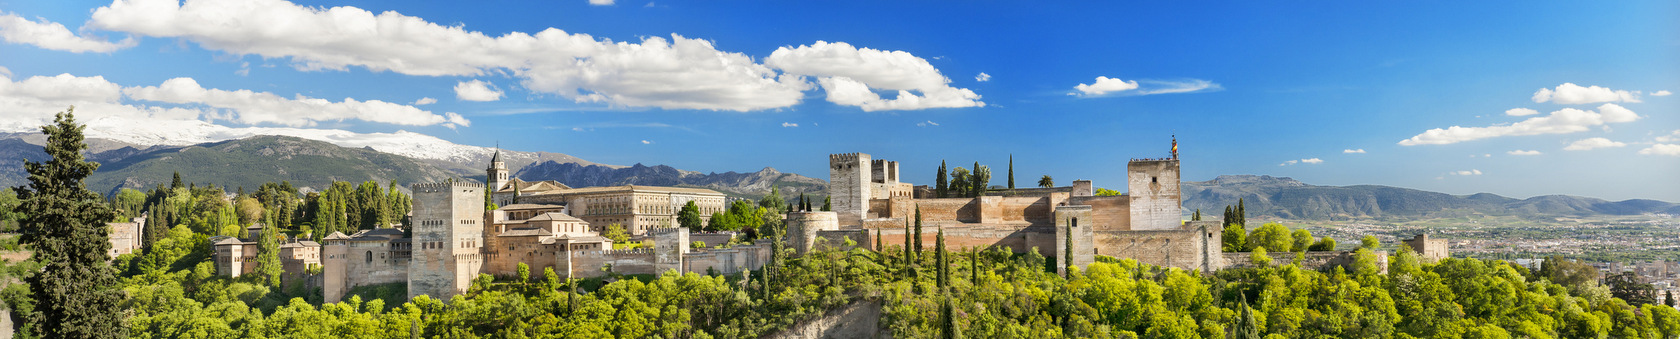 Granada - ciekawe miasto do poznawania języka hiszpańskiego